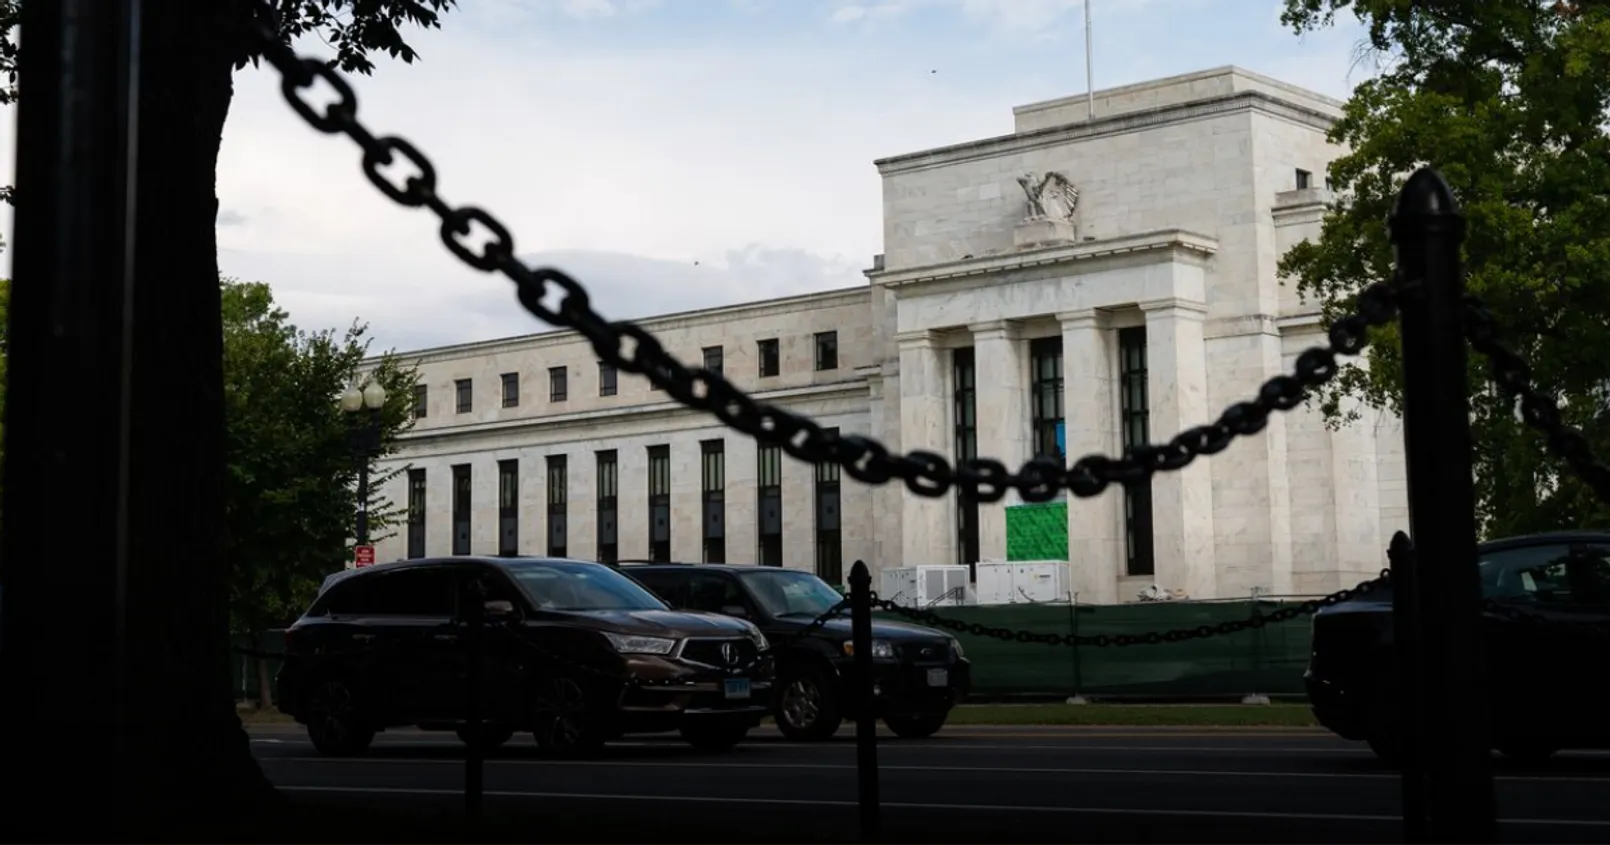 Fed เปิดรายงาน ชี้ ธ.สหรัฐฯ 700 แห่ง กำลังพบกับ ‘ความเสี่ยงด้านความปลอดภัยอย่างสูง’